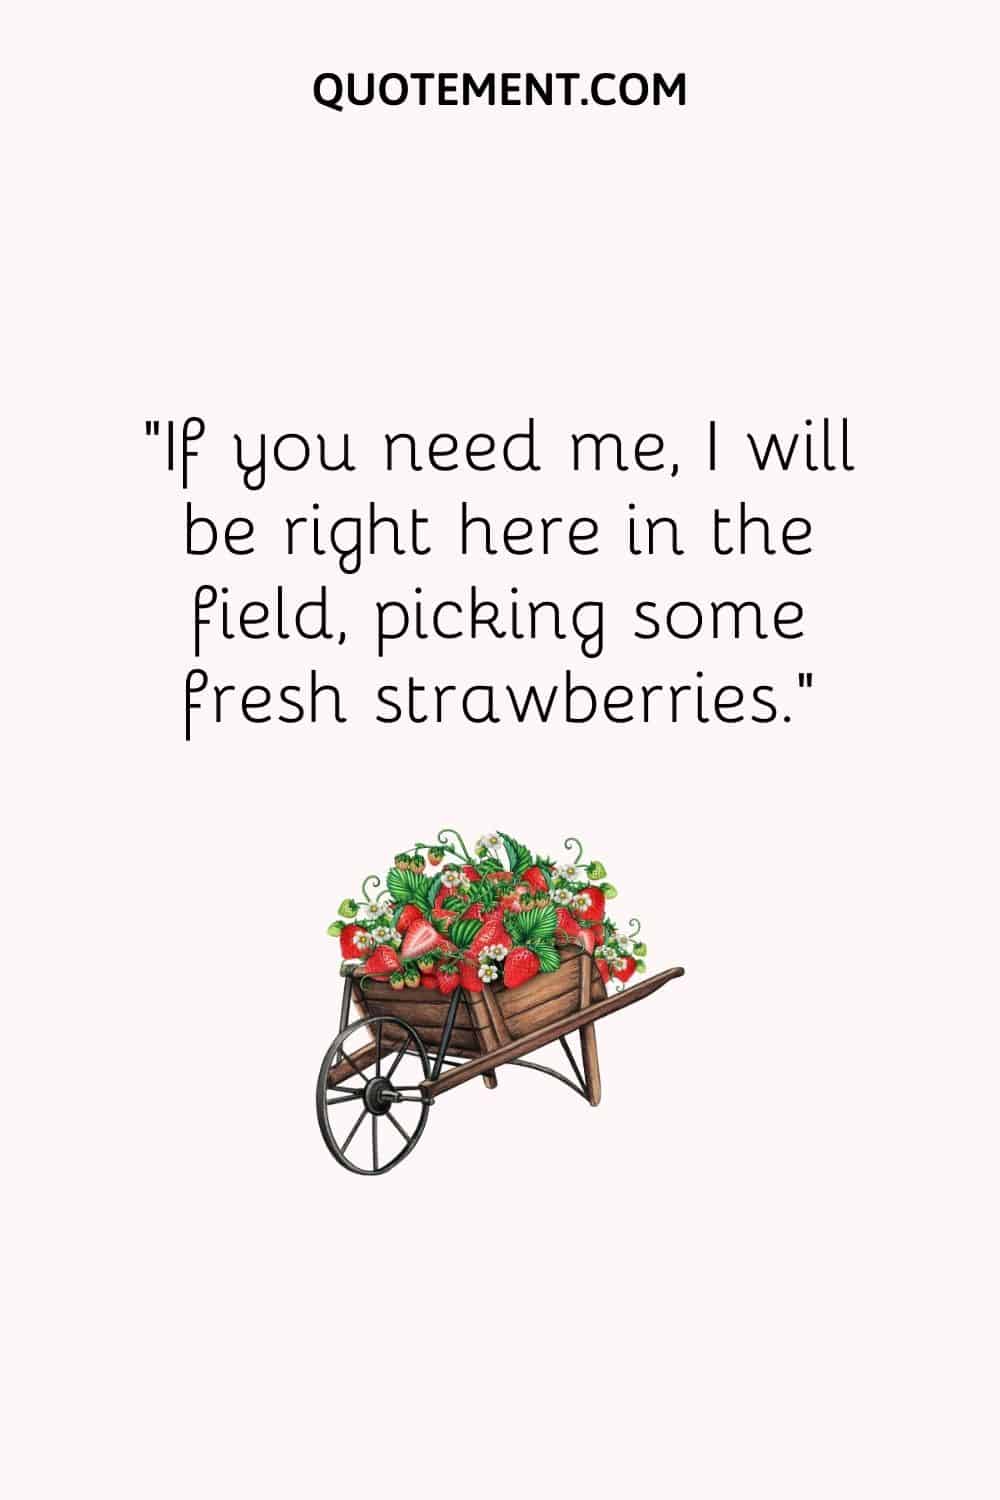 Si me necesitas, estaré aquí en el campo, recogiendo fresas frescas...